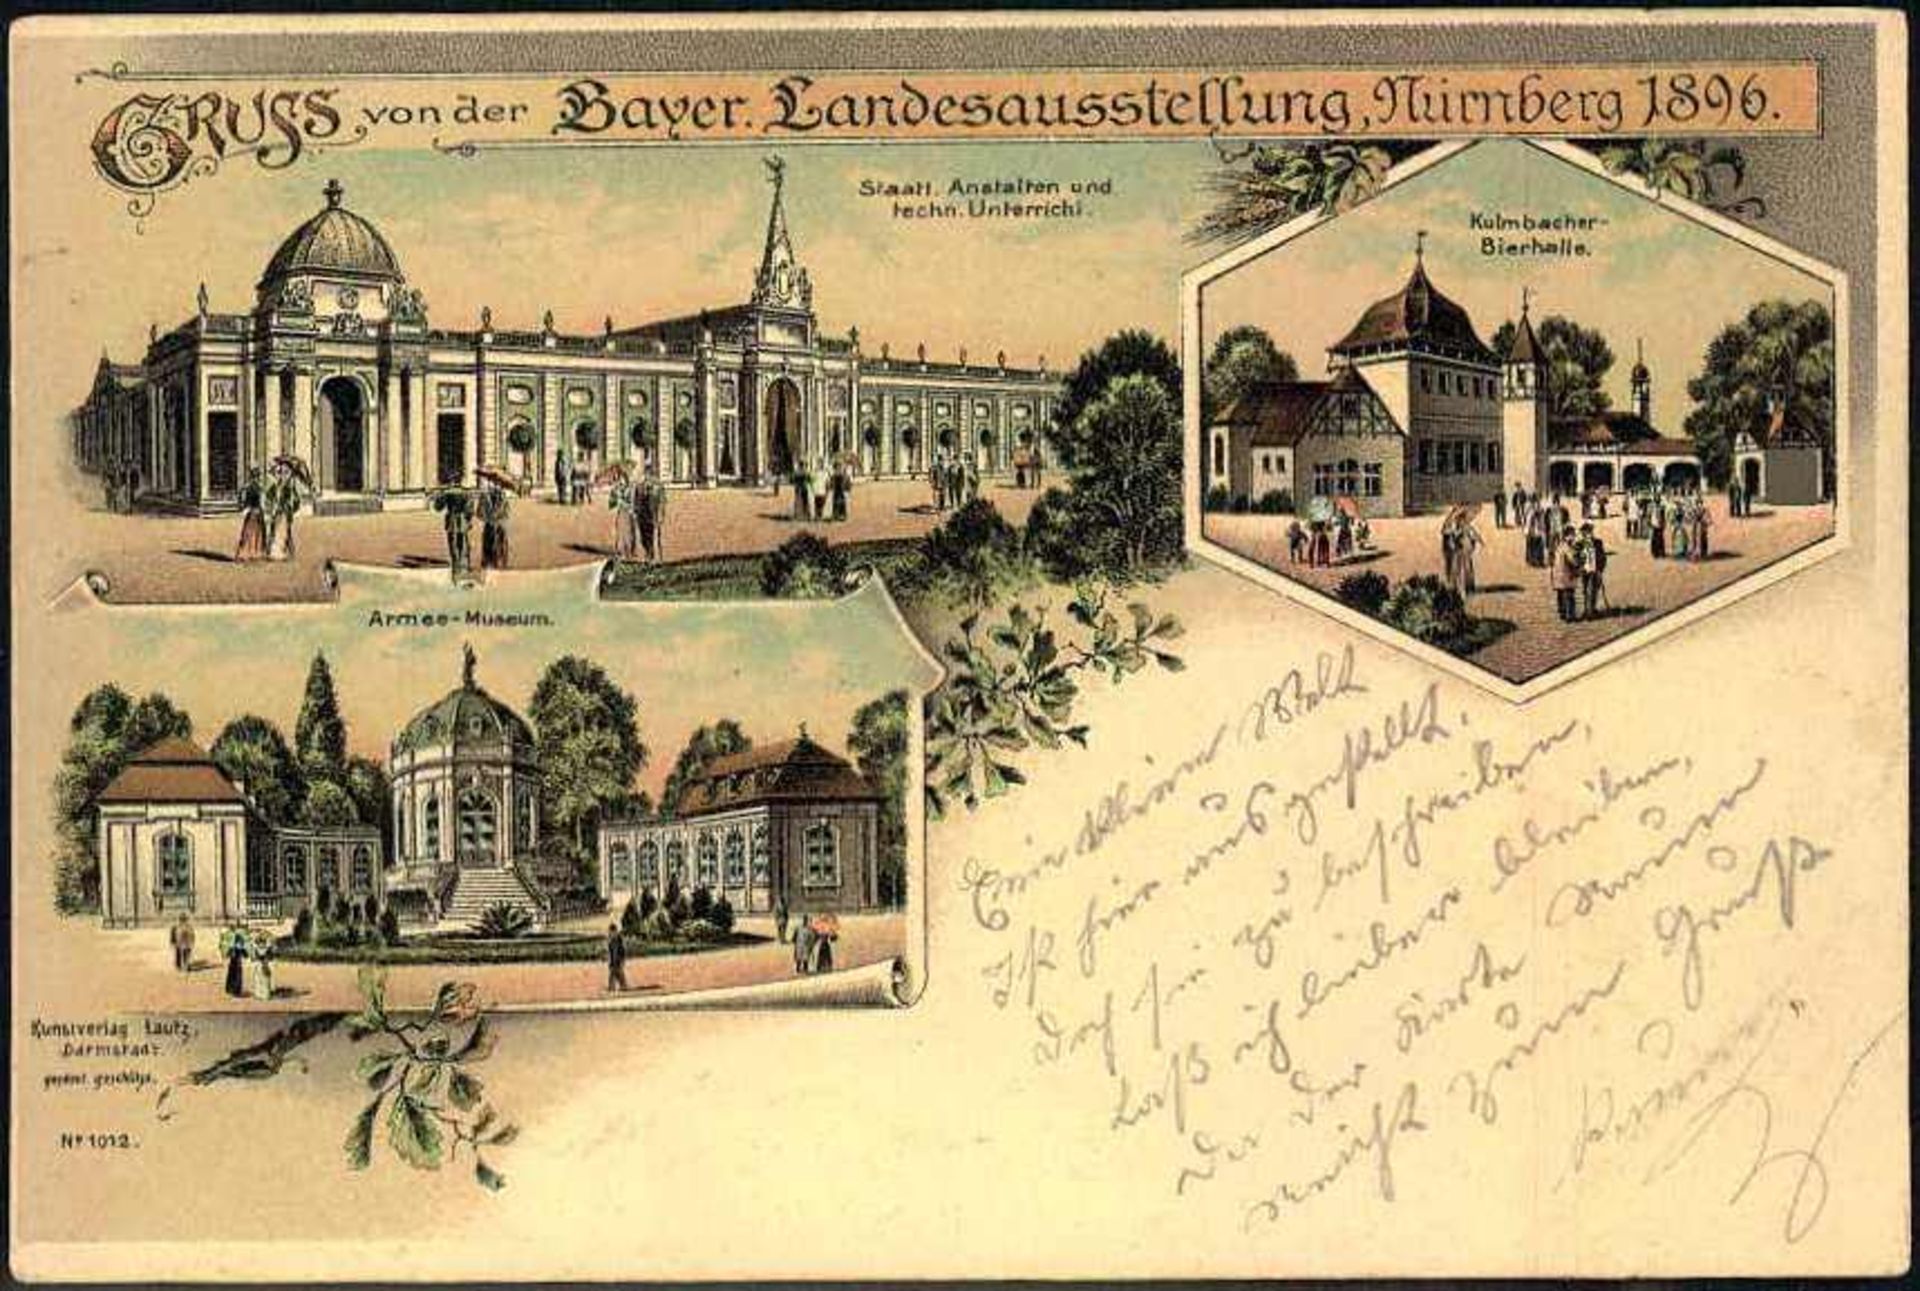 Ansichtskarte, "Gruss von der bayer. Landesausstellung, Nürnberg 1896", Teilansichten, beschrieben